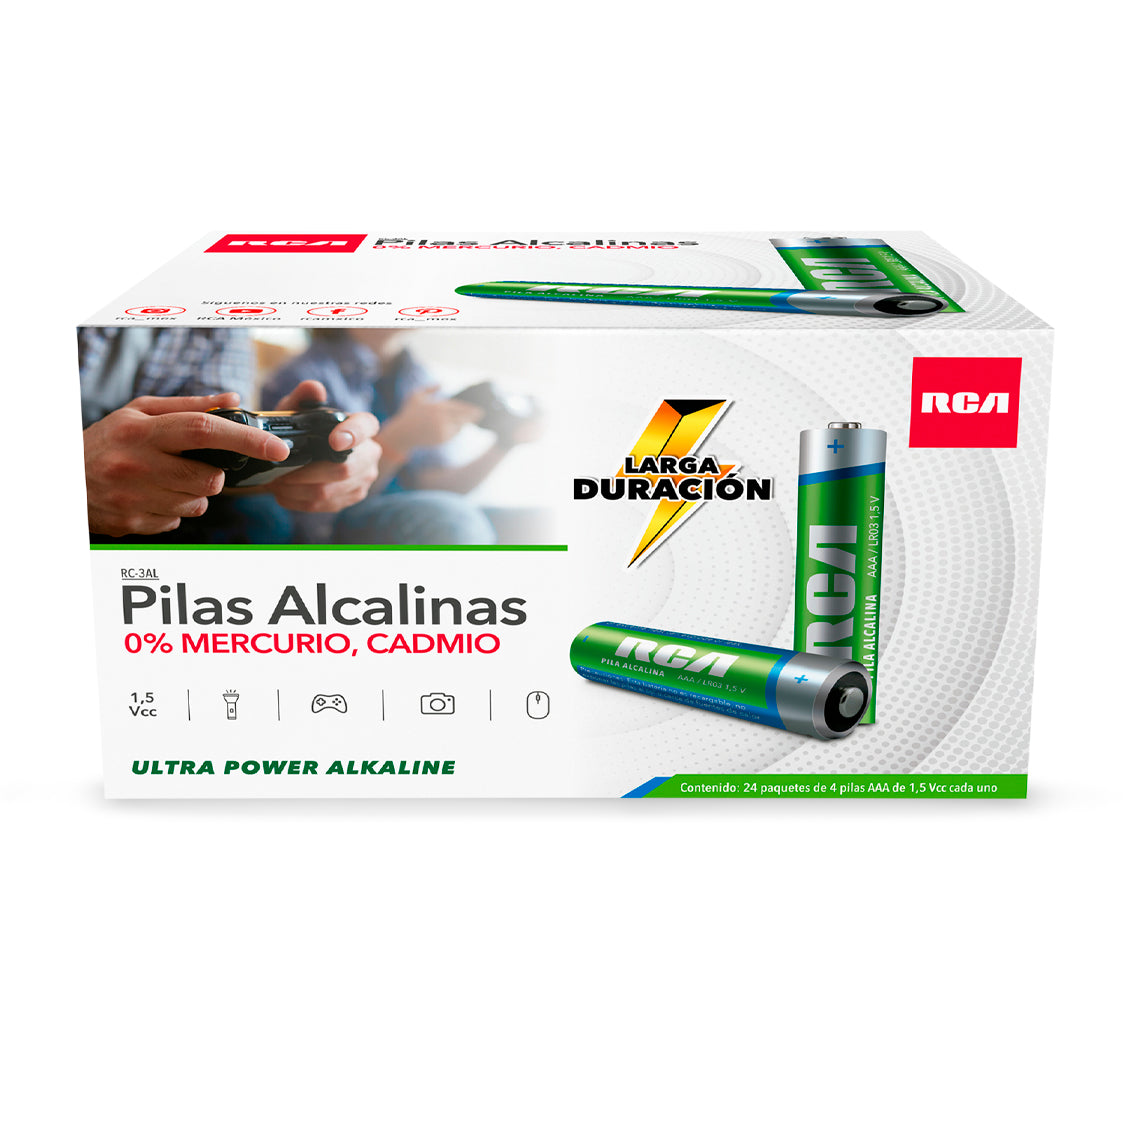 Paquete de 6 pilas alcalinas C